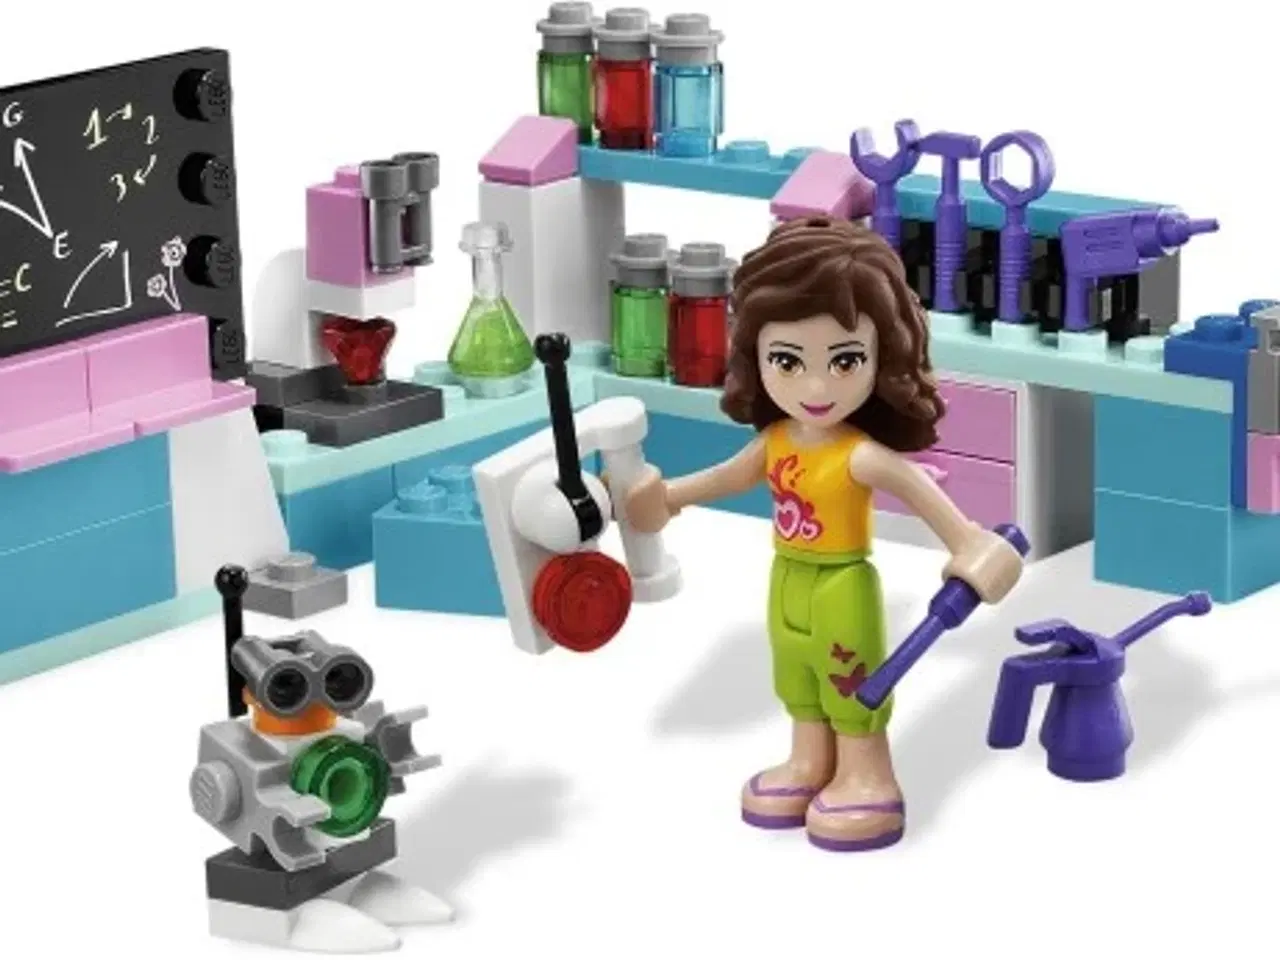 Billede 3 - LEGO Friends iscykel, værksted og postkasse